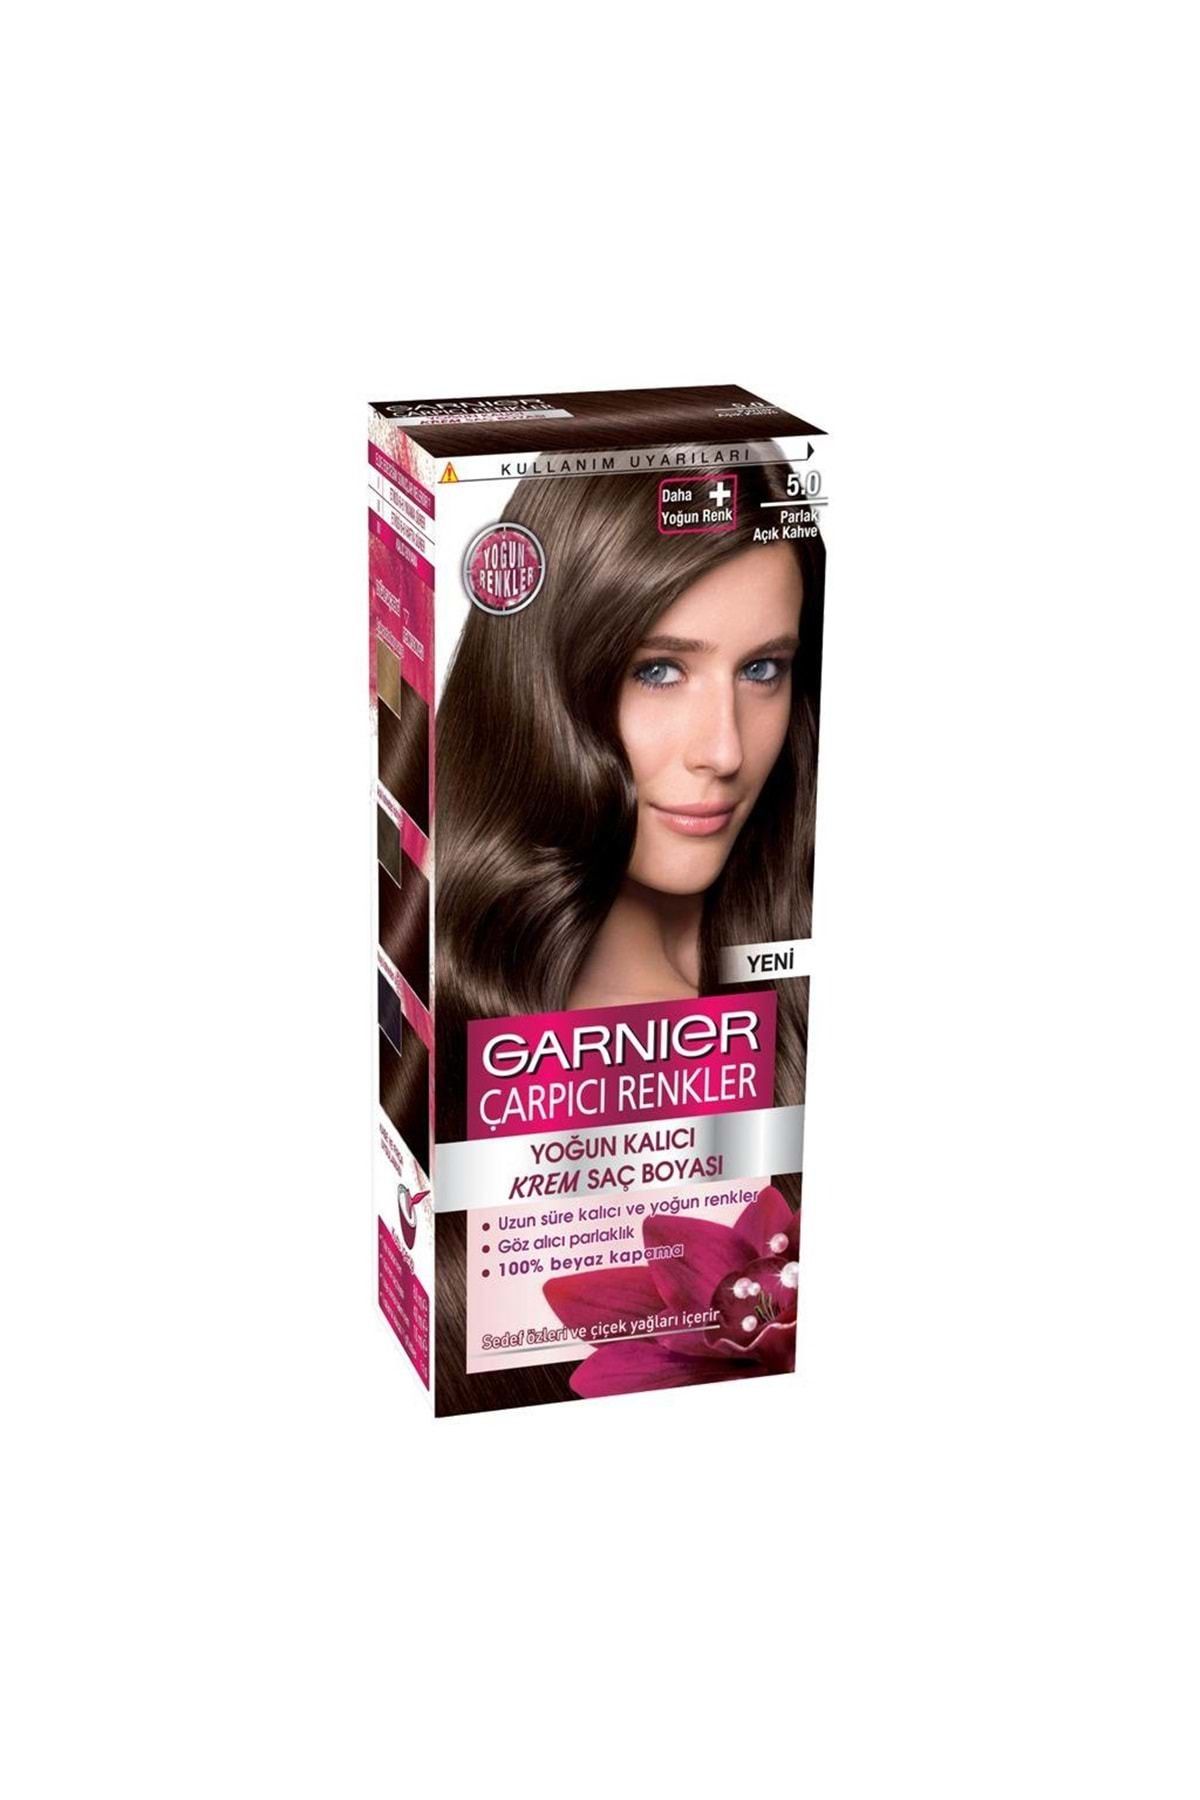 Garnier Çarpıcı Renkler Krem Saç Boyası 5.0 Parlak Açık Kahve